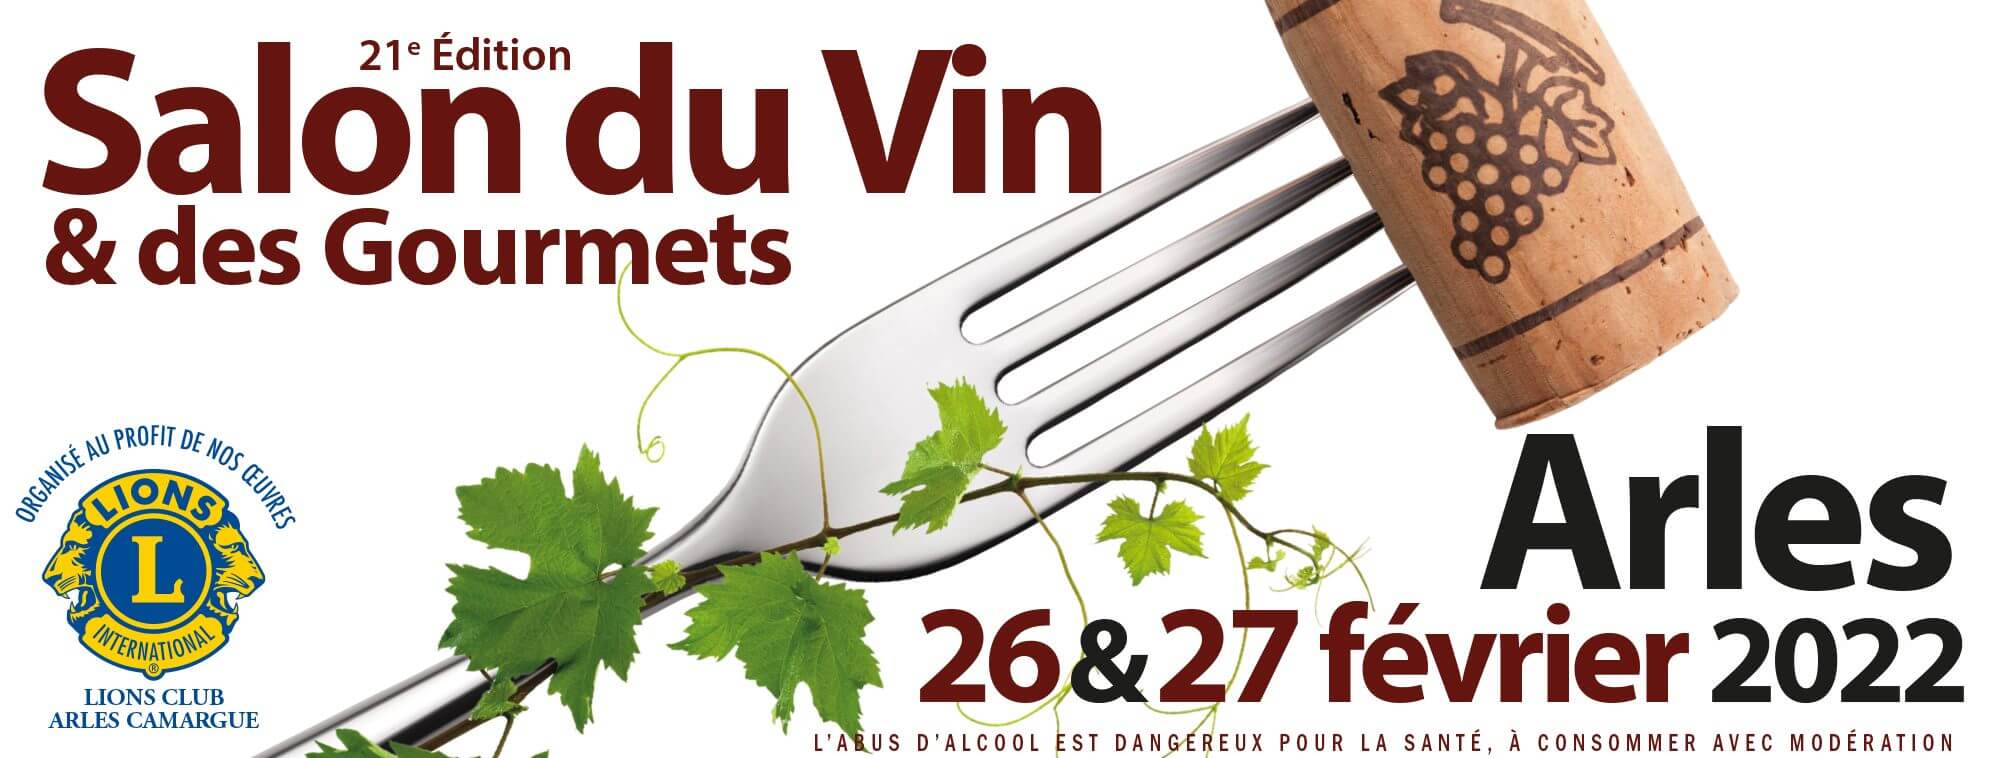 Salon du vin et des gourmets 2022 à Arles